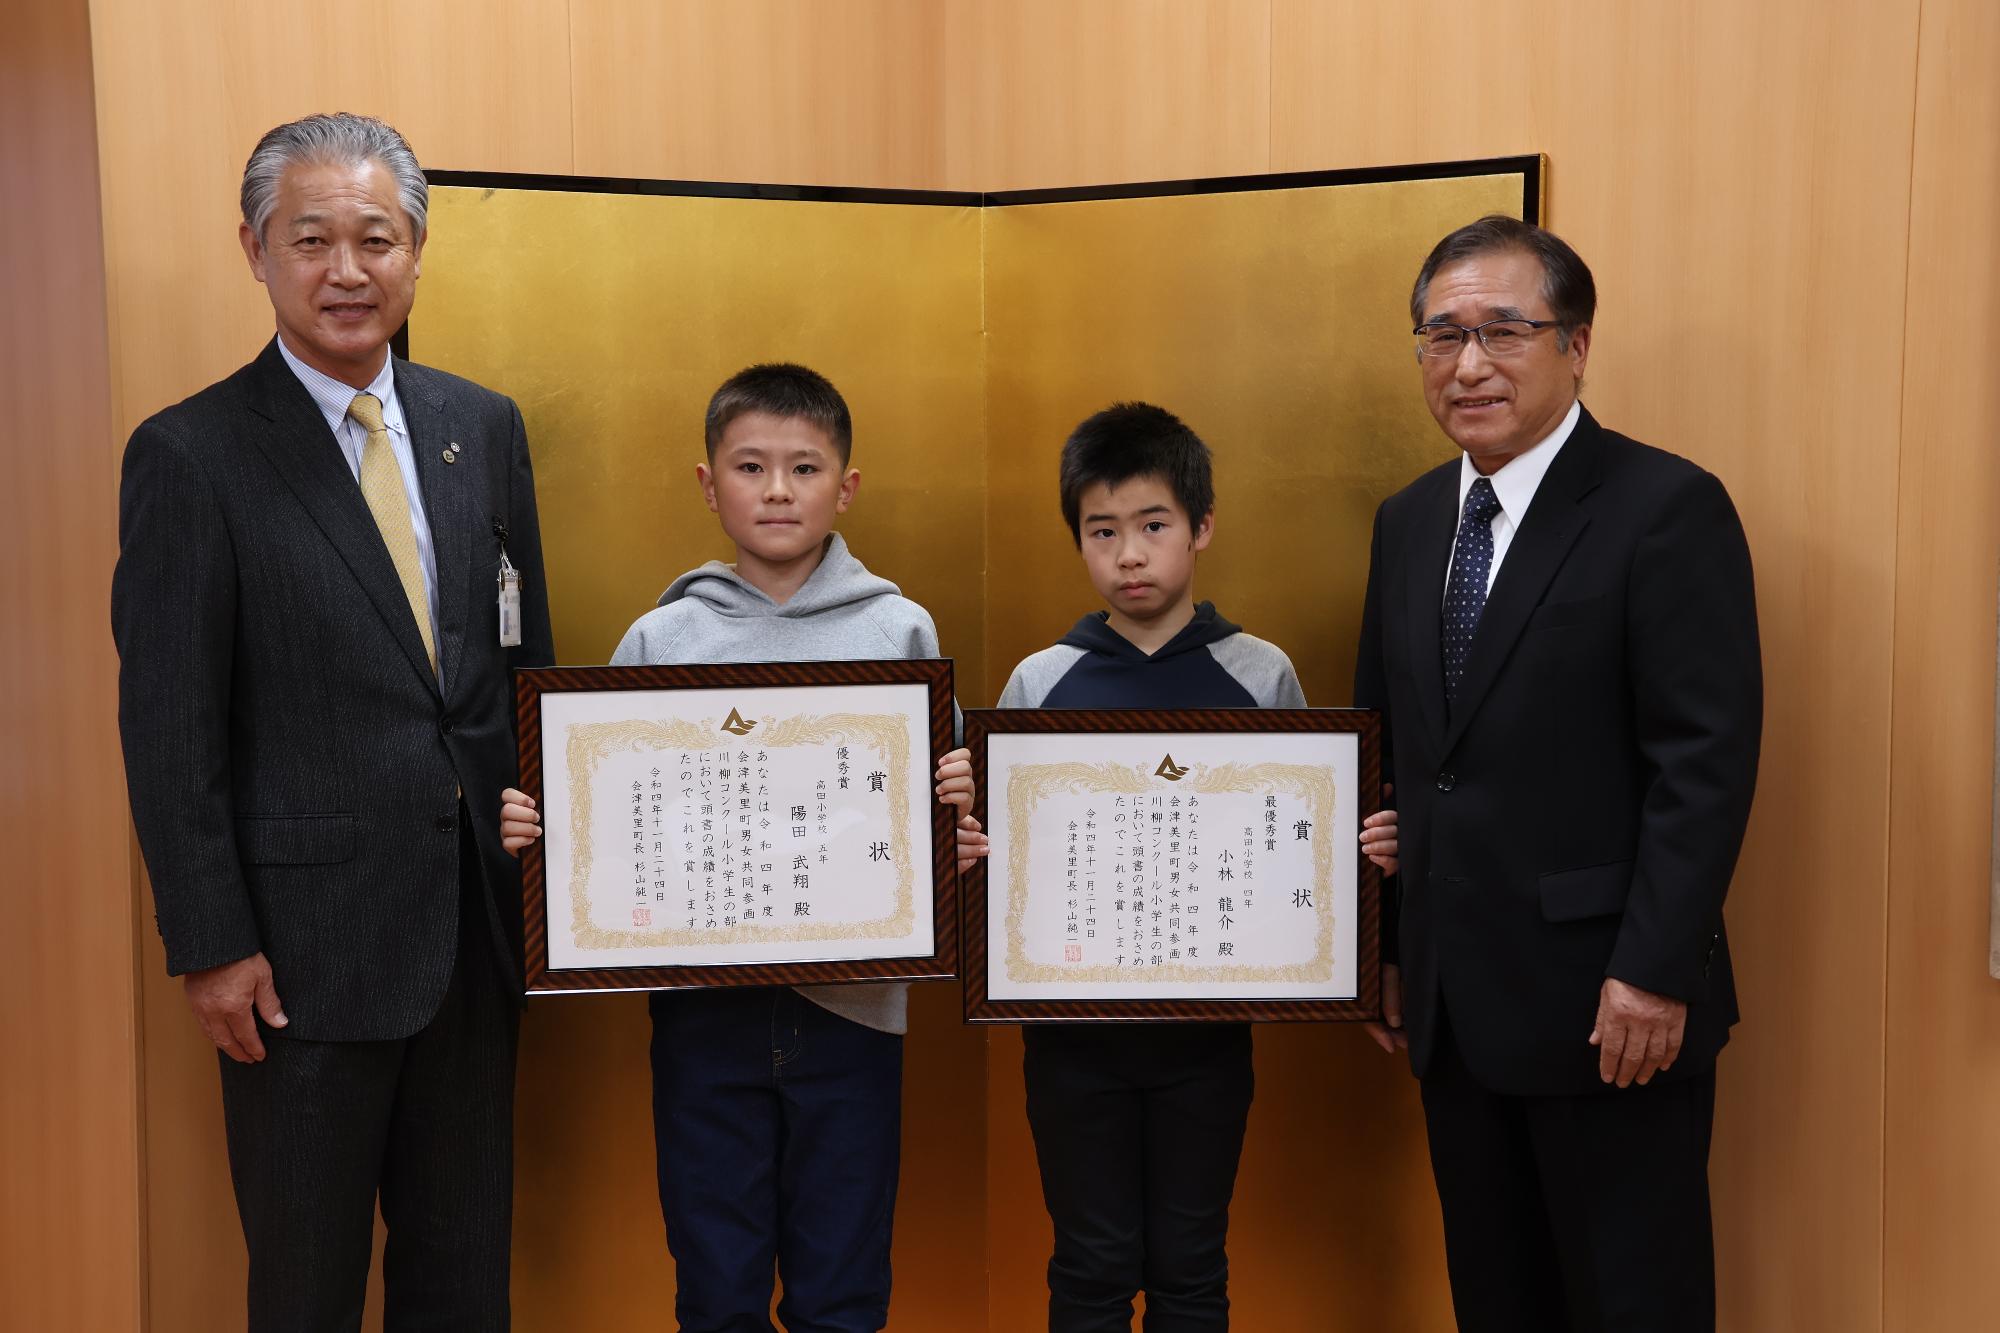 金屏風の前で男子生徒2人がそれぞれ賞状を胸の前に持って立っており、町長と川島忠夫会長に挟まれ記念撮影をしている写真